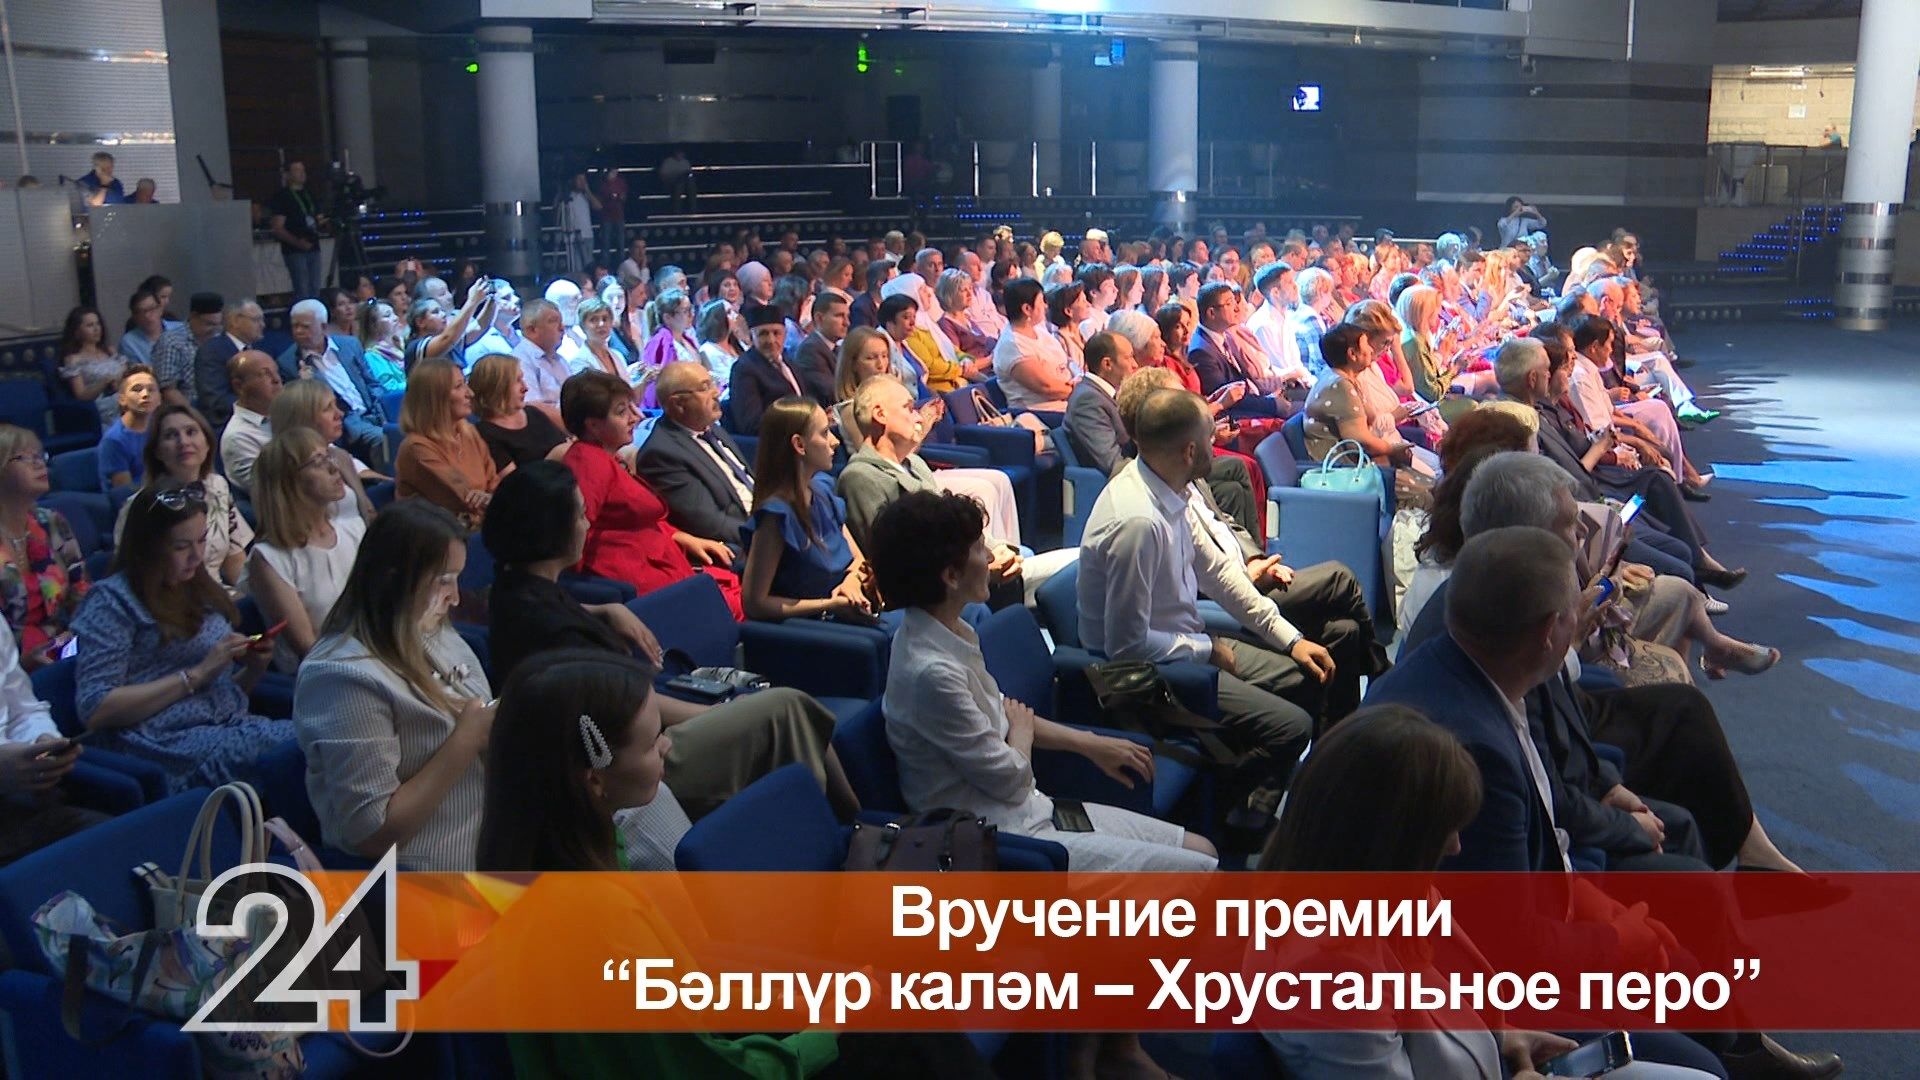 В Казани прошла юбилейная церемония награждения лучших журналистов Хрустальное перо